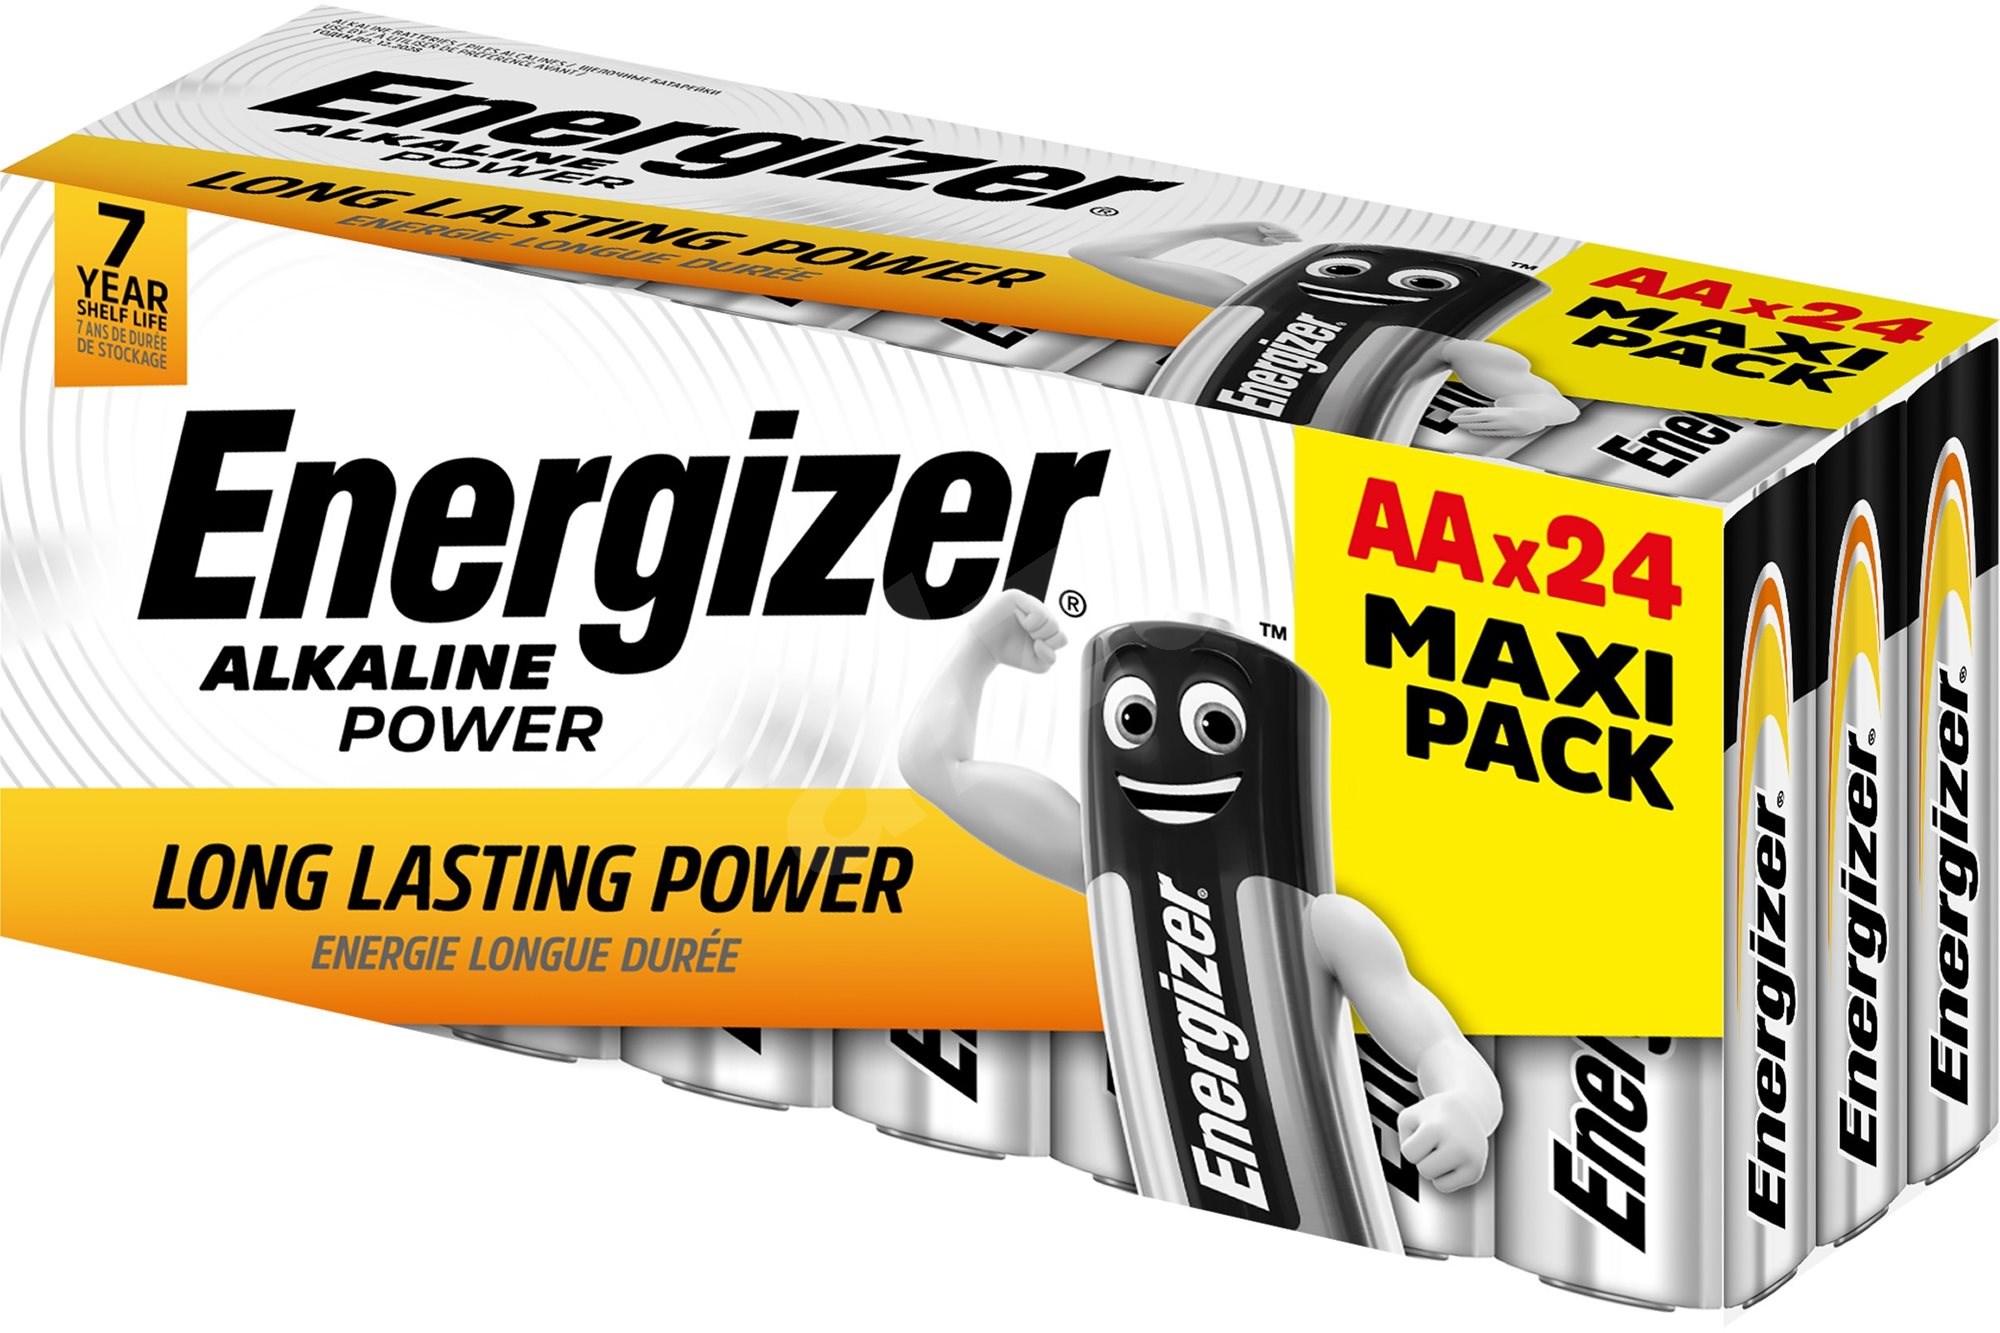 Energizer Alkaline Power AA 24 ks akční balení baterií Energizer LR6 24ks, zvýhodněné balení